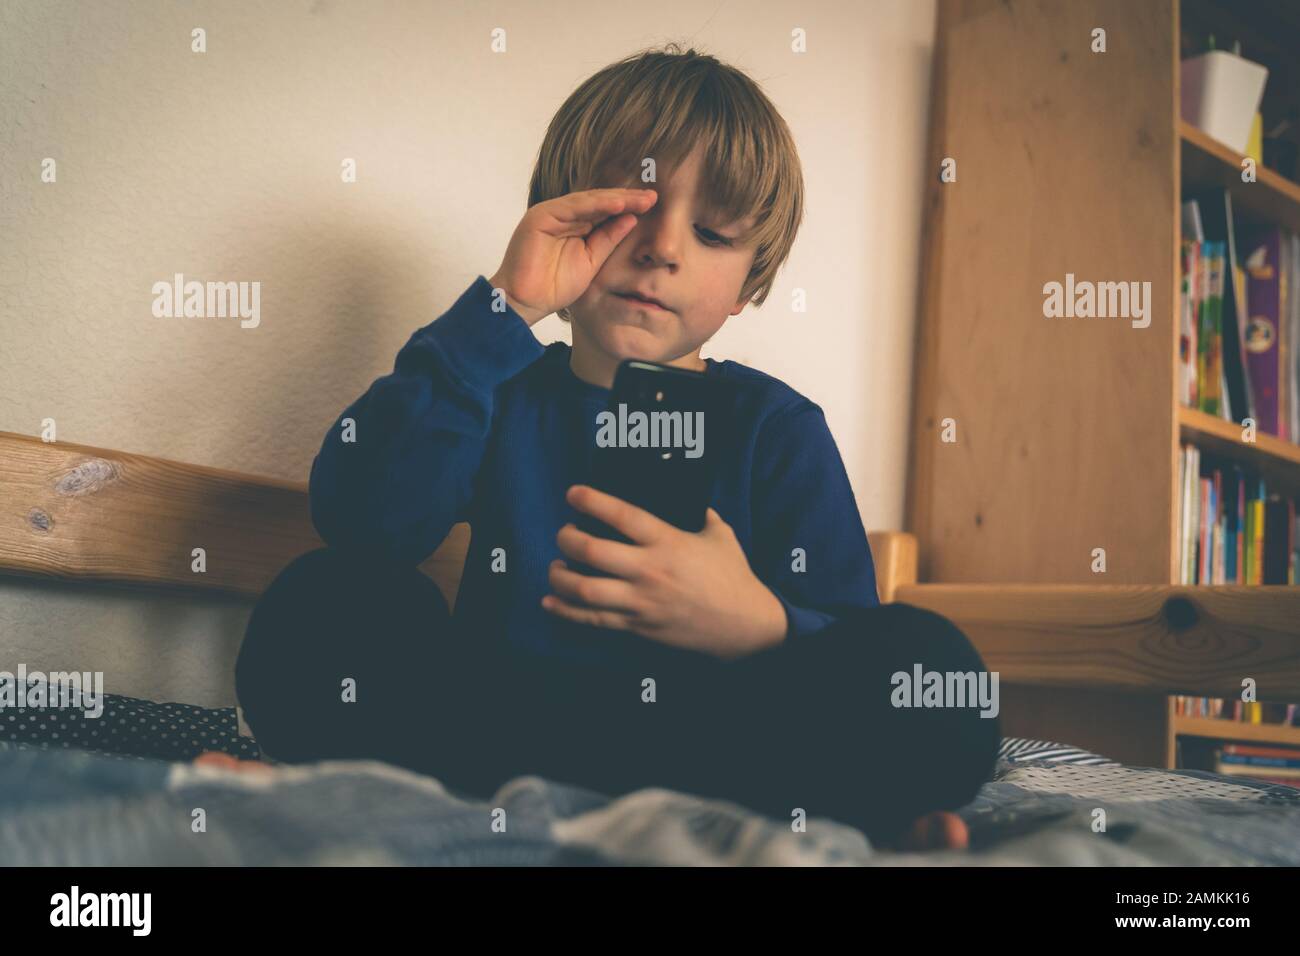 Cyber bullying concepto - niño deprimido con teléfono y comentarios negativos Foto de stock